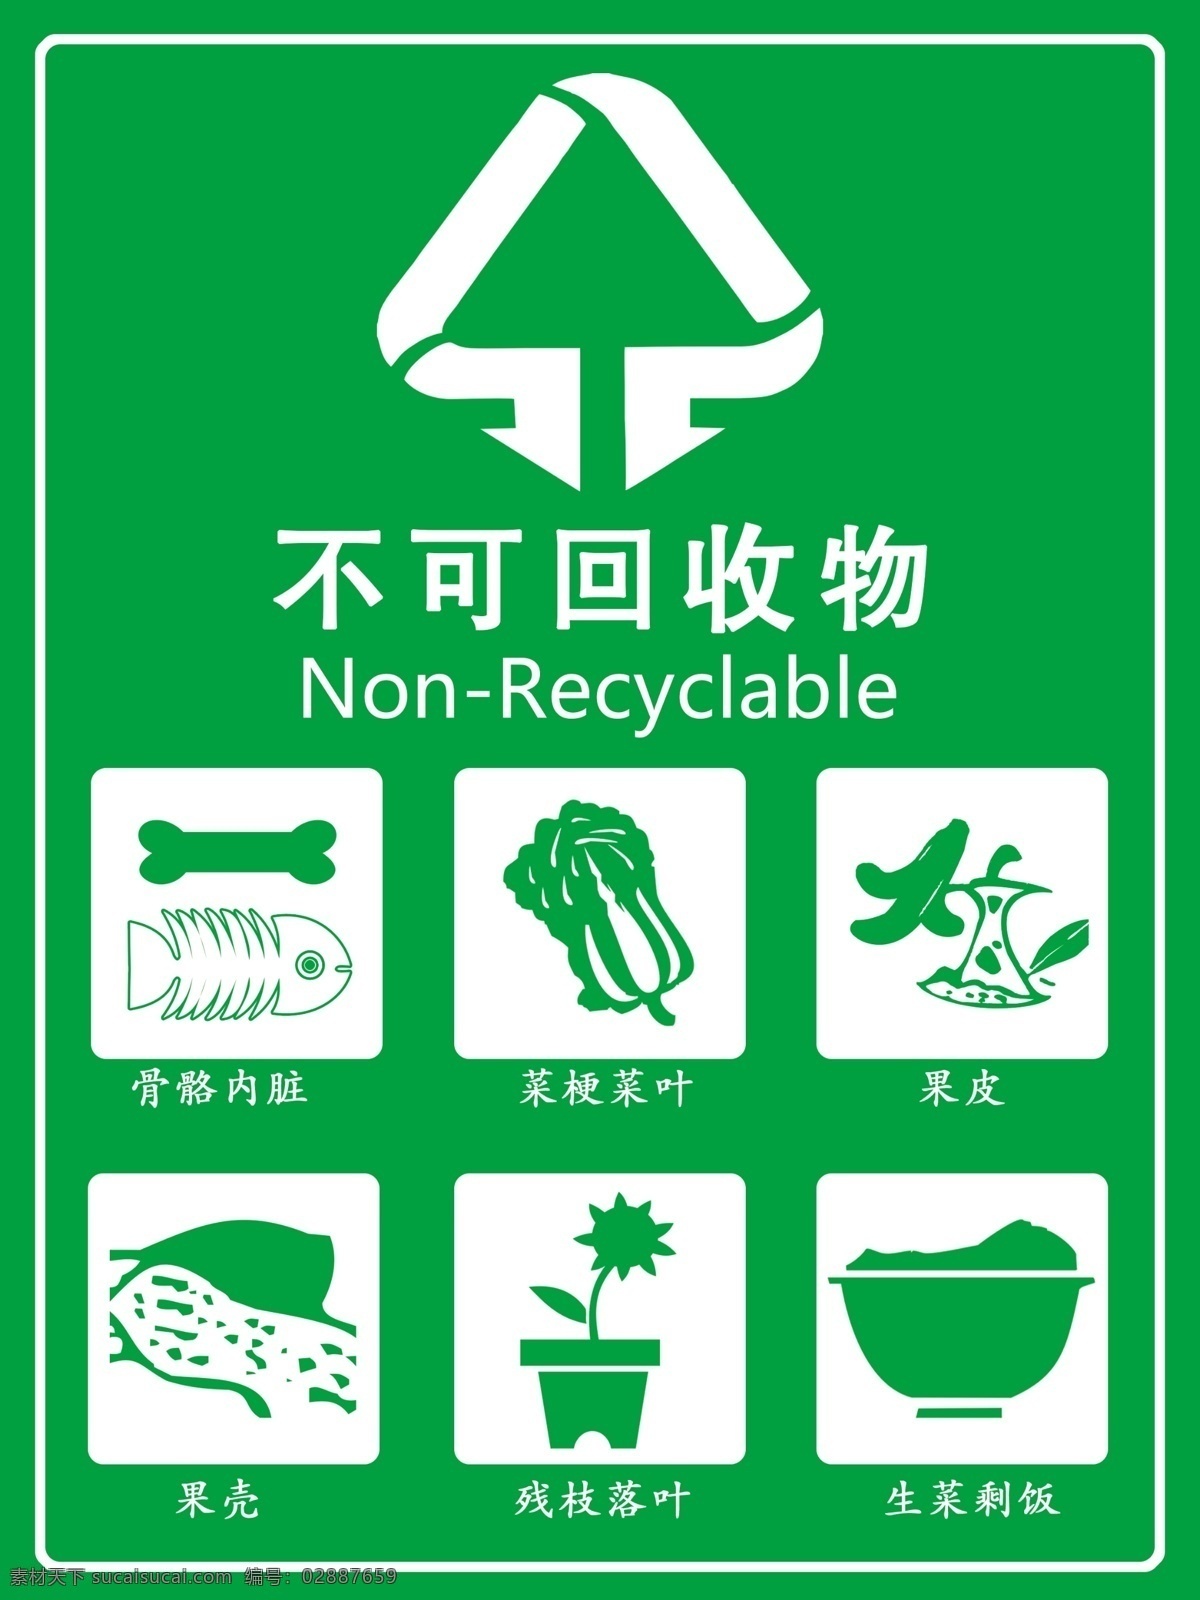 不可回收物 回收 垃圾 回收垃圾 餐厨垃圾 菜叶垃圾 果壳垃圾 不可回收垃圾 jinguangsheji 分层